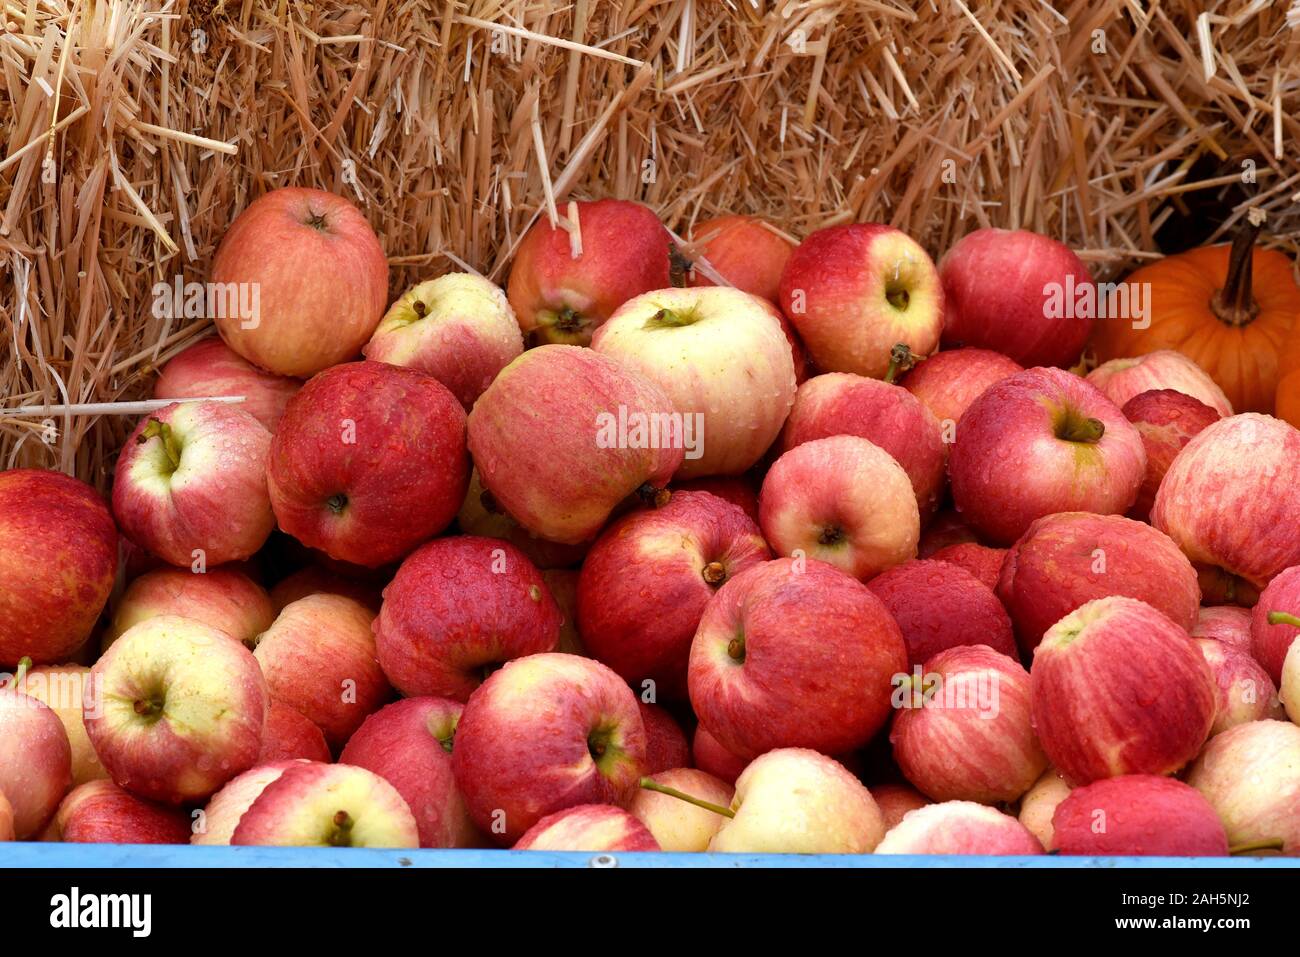 Apfel, Malus domestica ist eine heimische wohlschmeckende Frucht. Apple, Malus domestica is a local, tasty fruit. Stock Photo